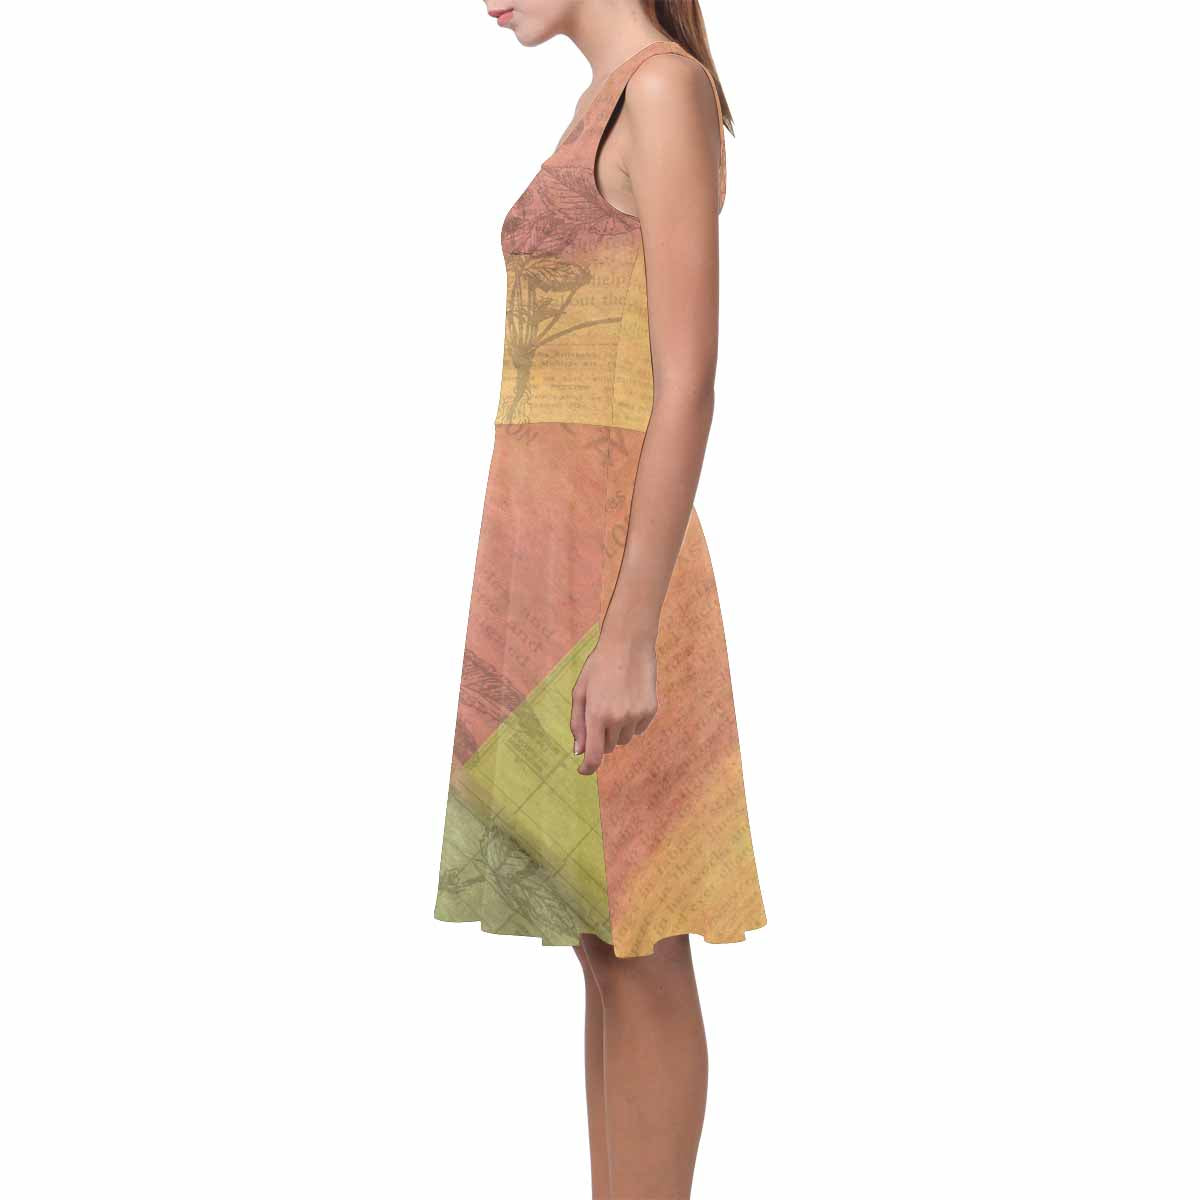 Antique General summer dress, MODEL 09534, design 31